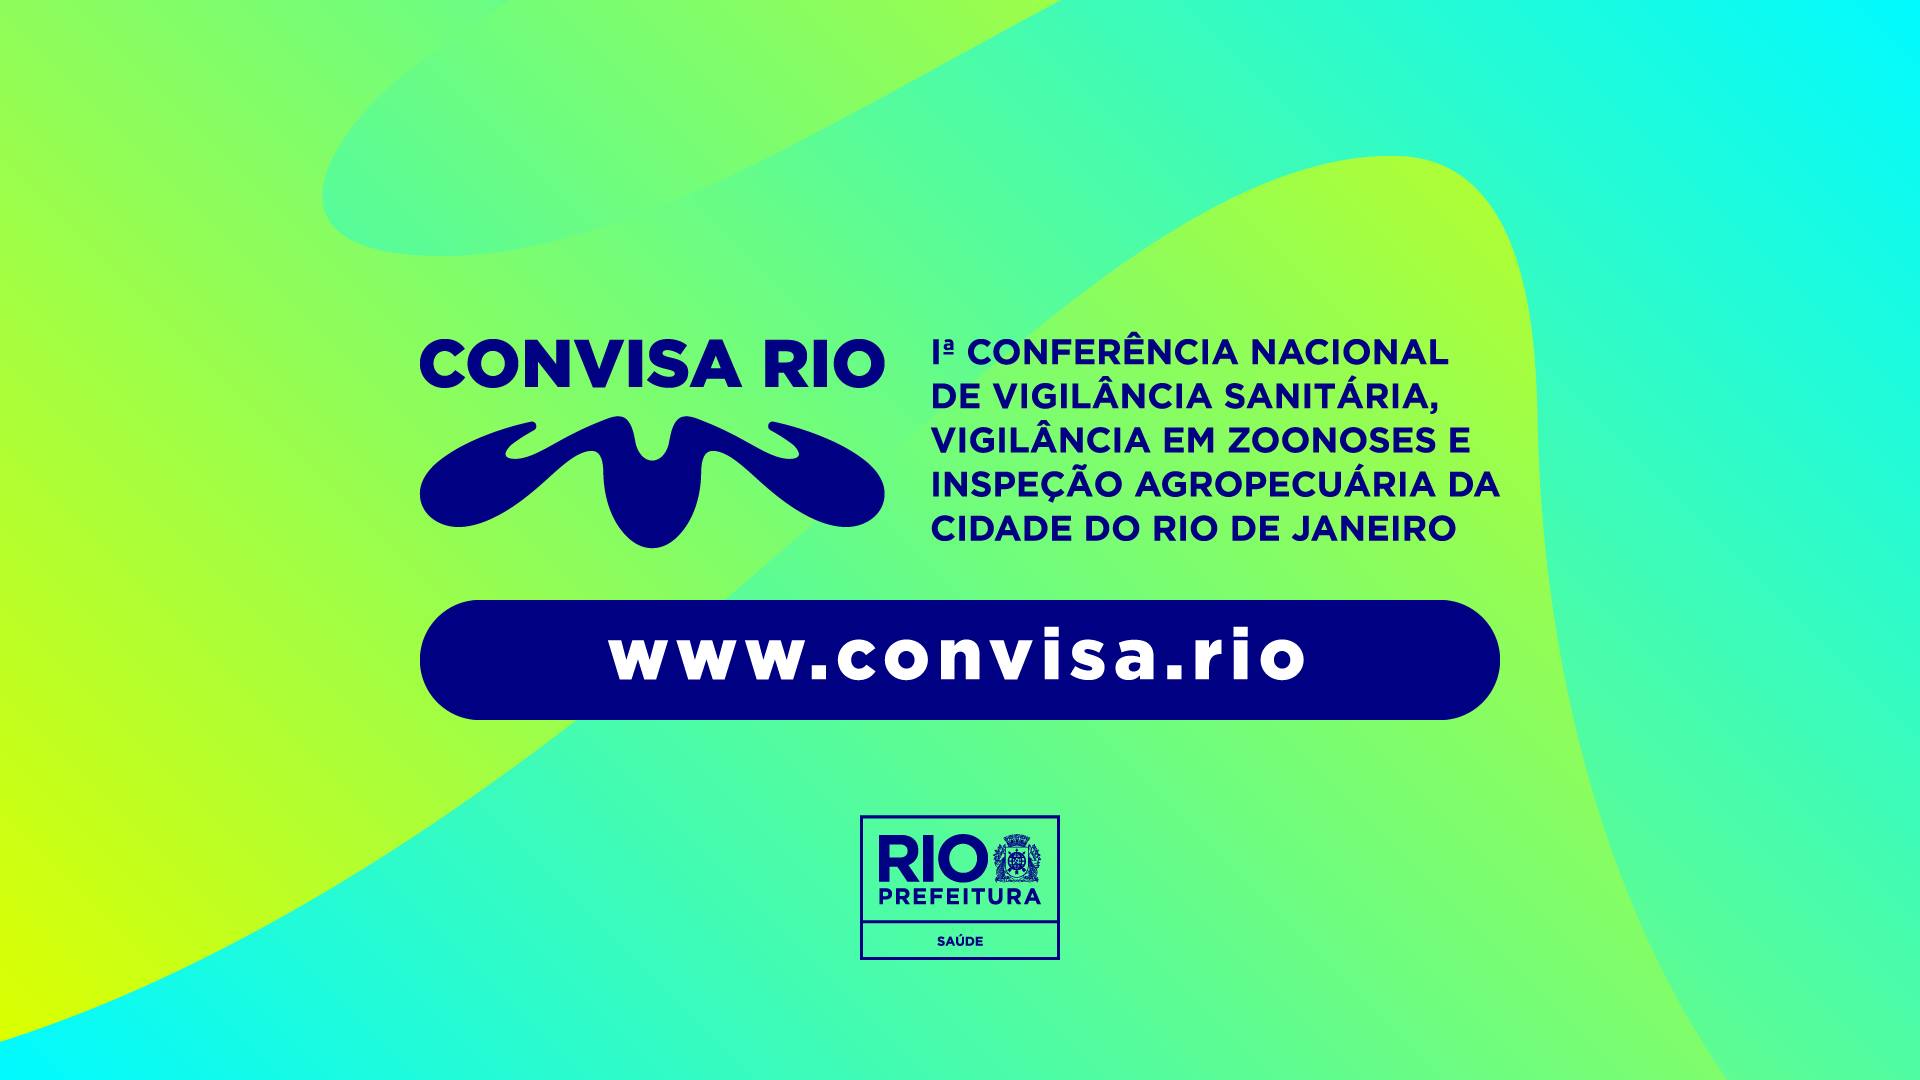 1ª Conferência da Vigilância Sanitária - Convisa Rio, acontece em agosto